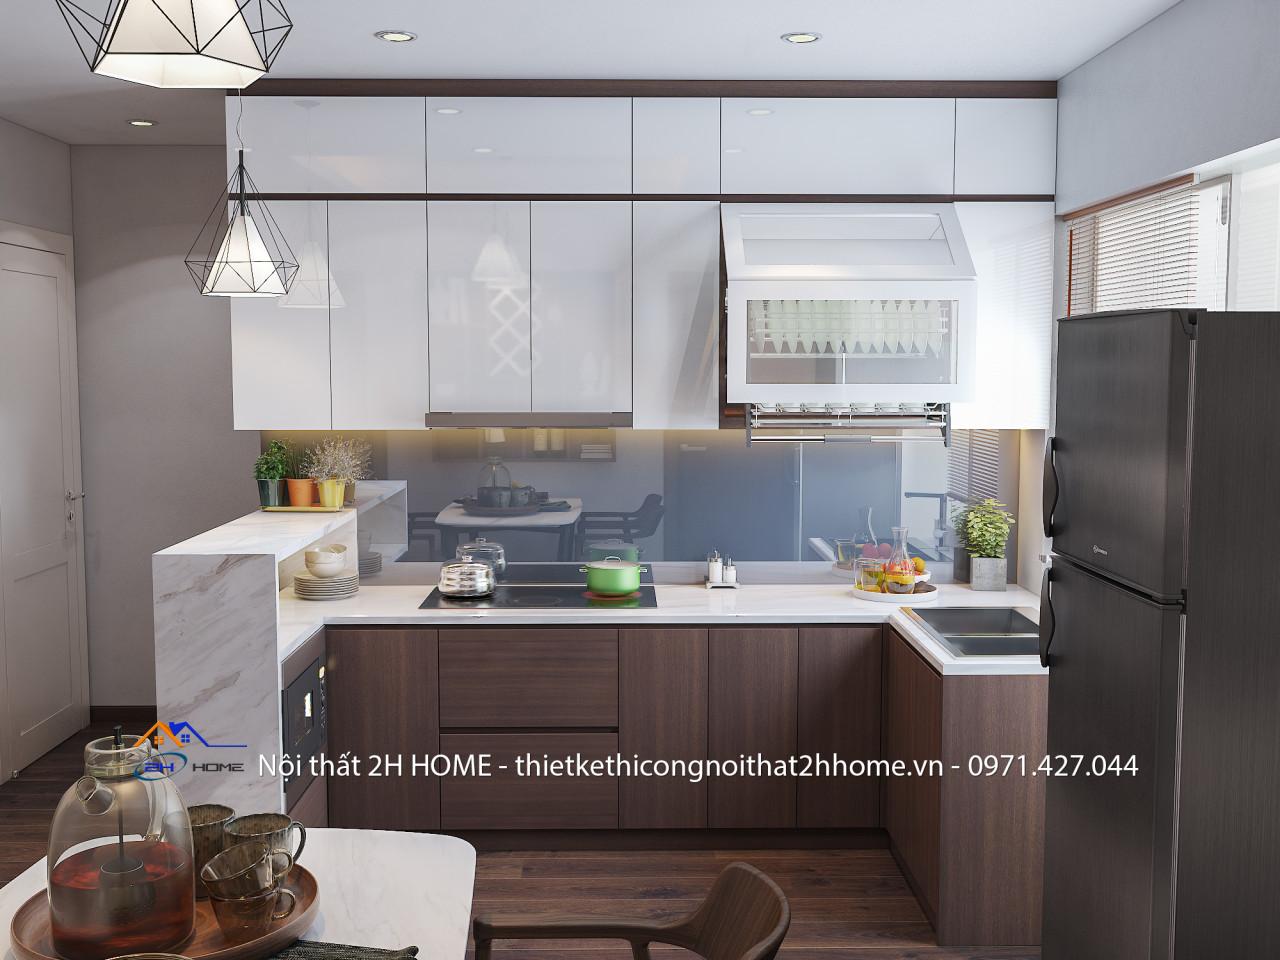 Tủ bếp được thiết kế với chất liệu acrylic tráng gương kết hợp với tông nâu gỗ mang lại cảm giác sạch sẽ và sang trọng